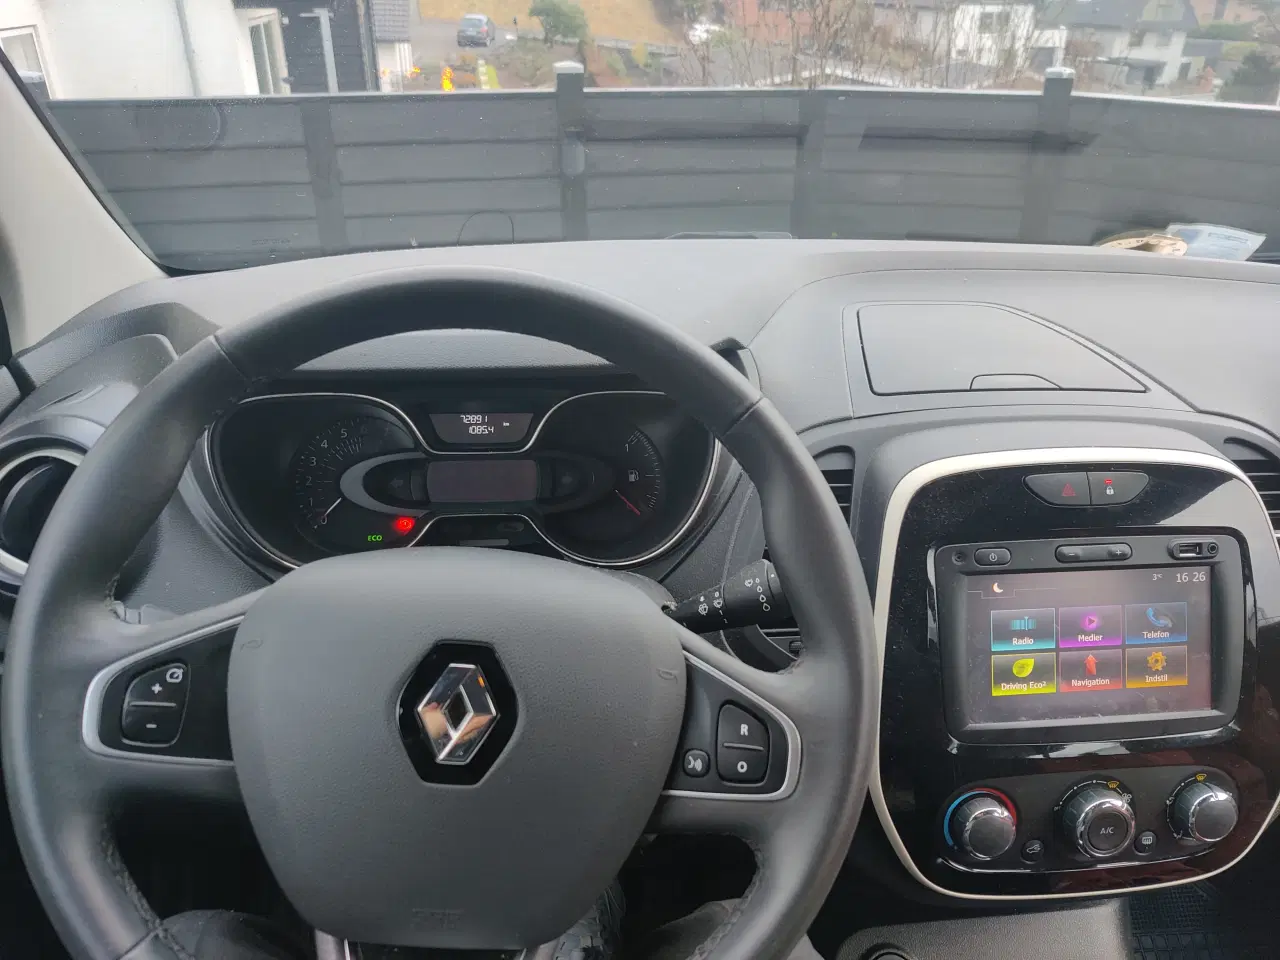 Billede 3 - Renault Captur - billigste 2018 Captur i DK